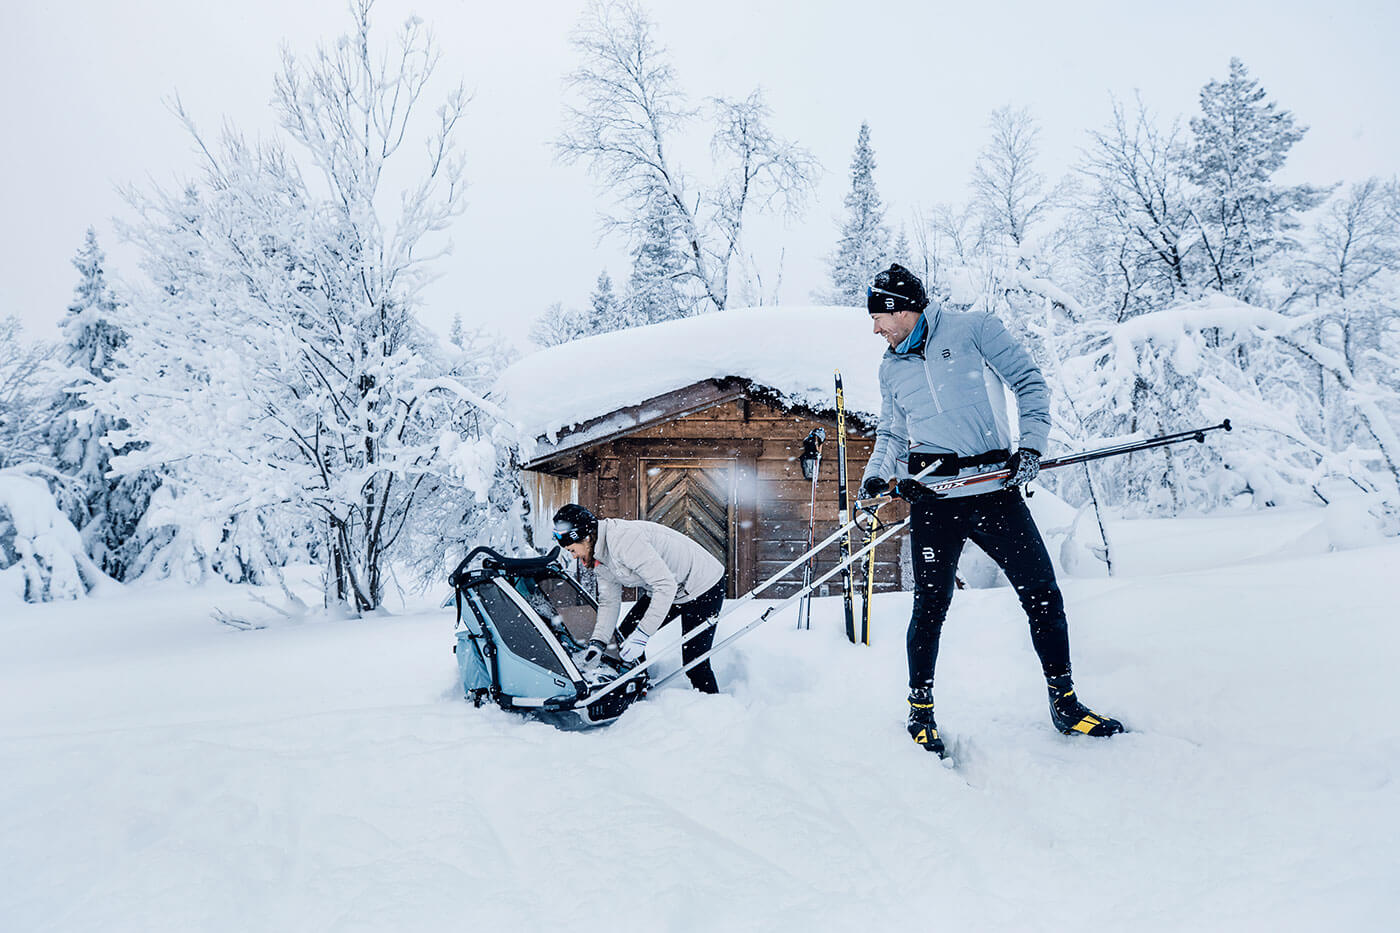 Narciarstwo biegowe z dzieckiem? Thule Chariot Cross-Country Skiing Kit pozwala na wiele więcej